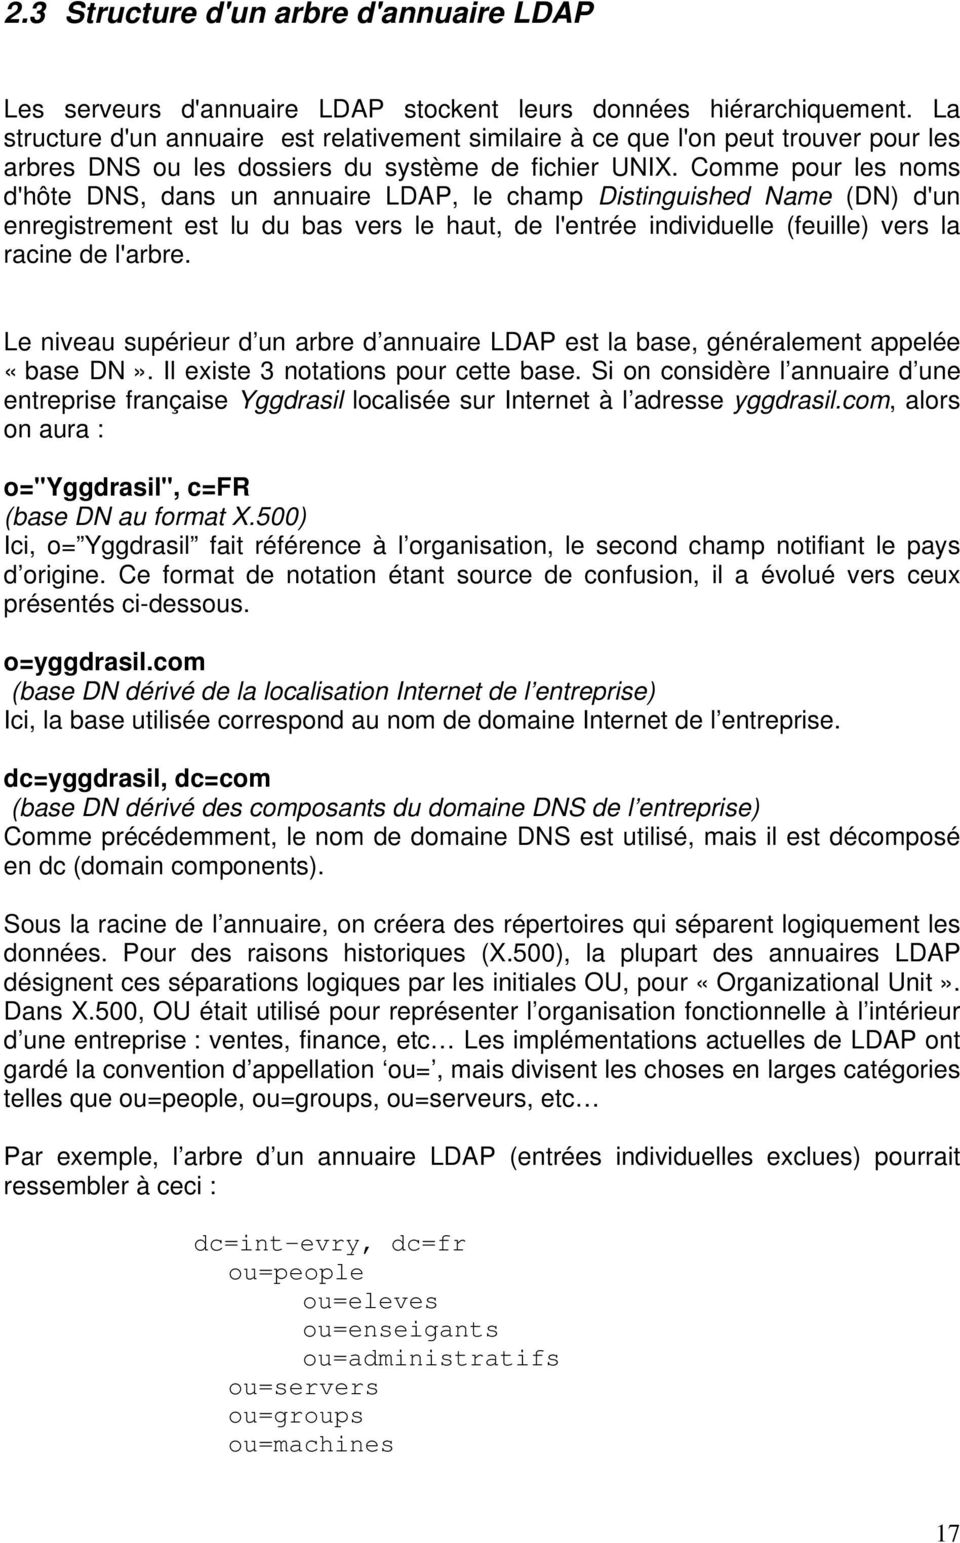 Comme pour les noms d'hôte DNS, dans un annuaire LDAP, le champ Distinguished Name (DN) d'un enregistrement est lu du bas vers le haut, de l'entrée individuelle (feuille) vers la racine de l'arbre.